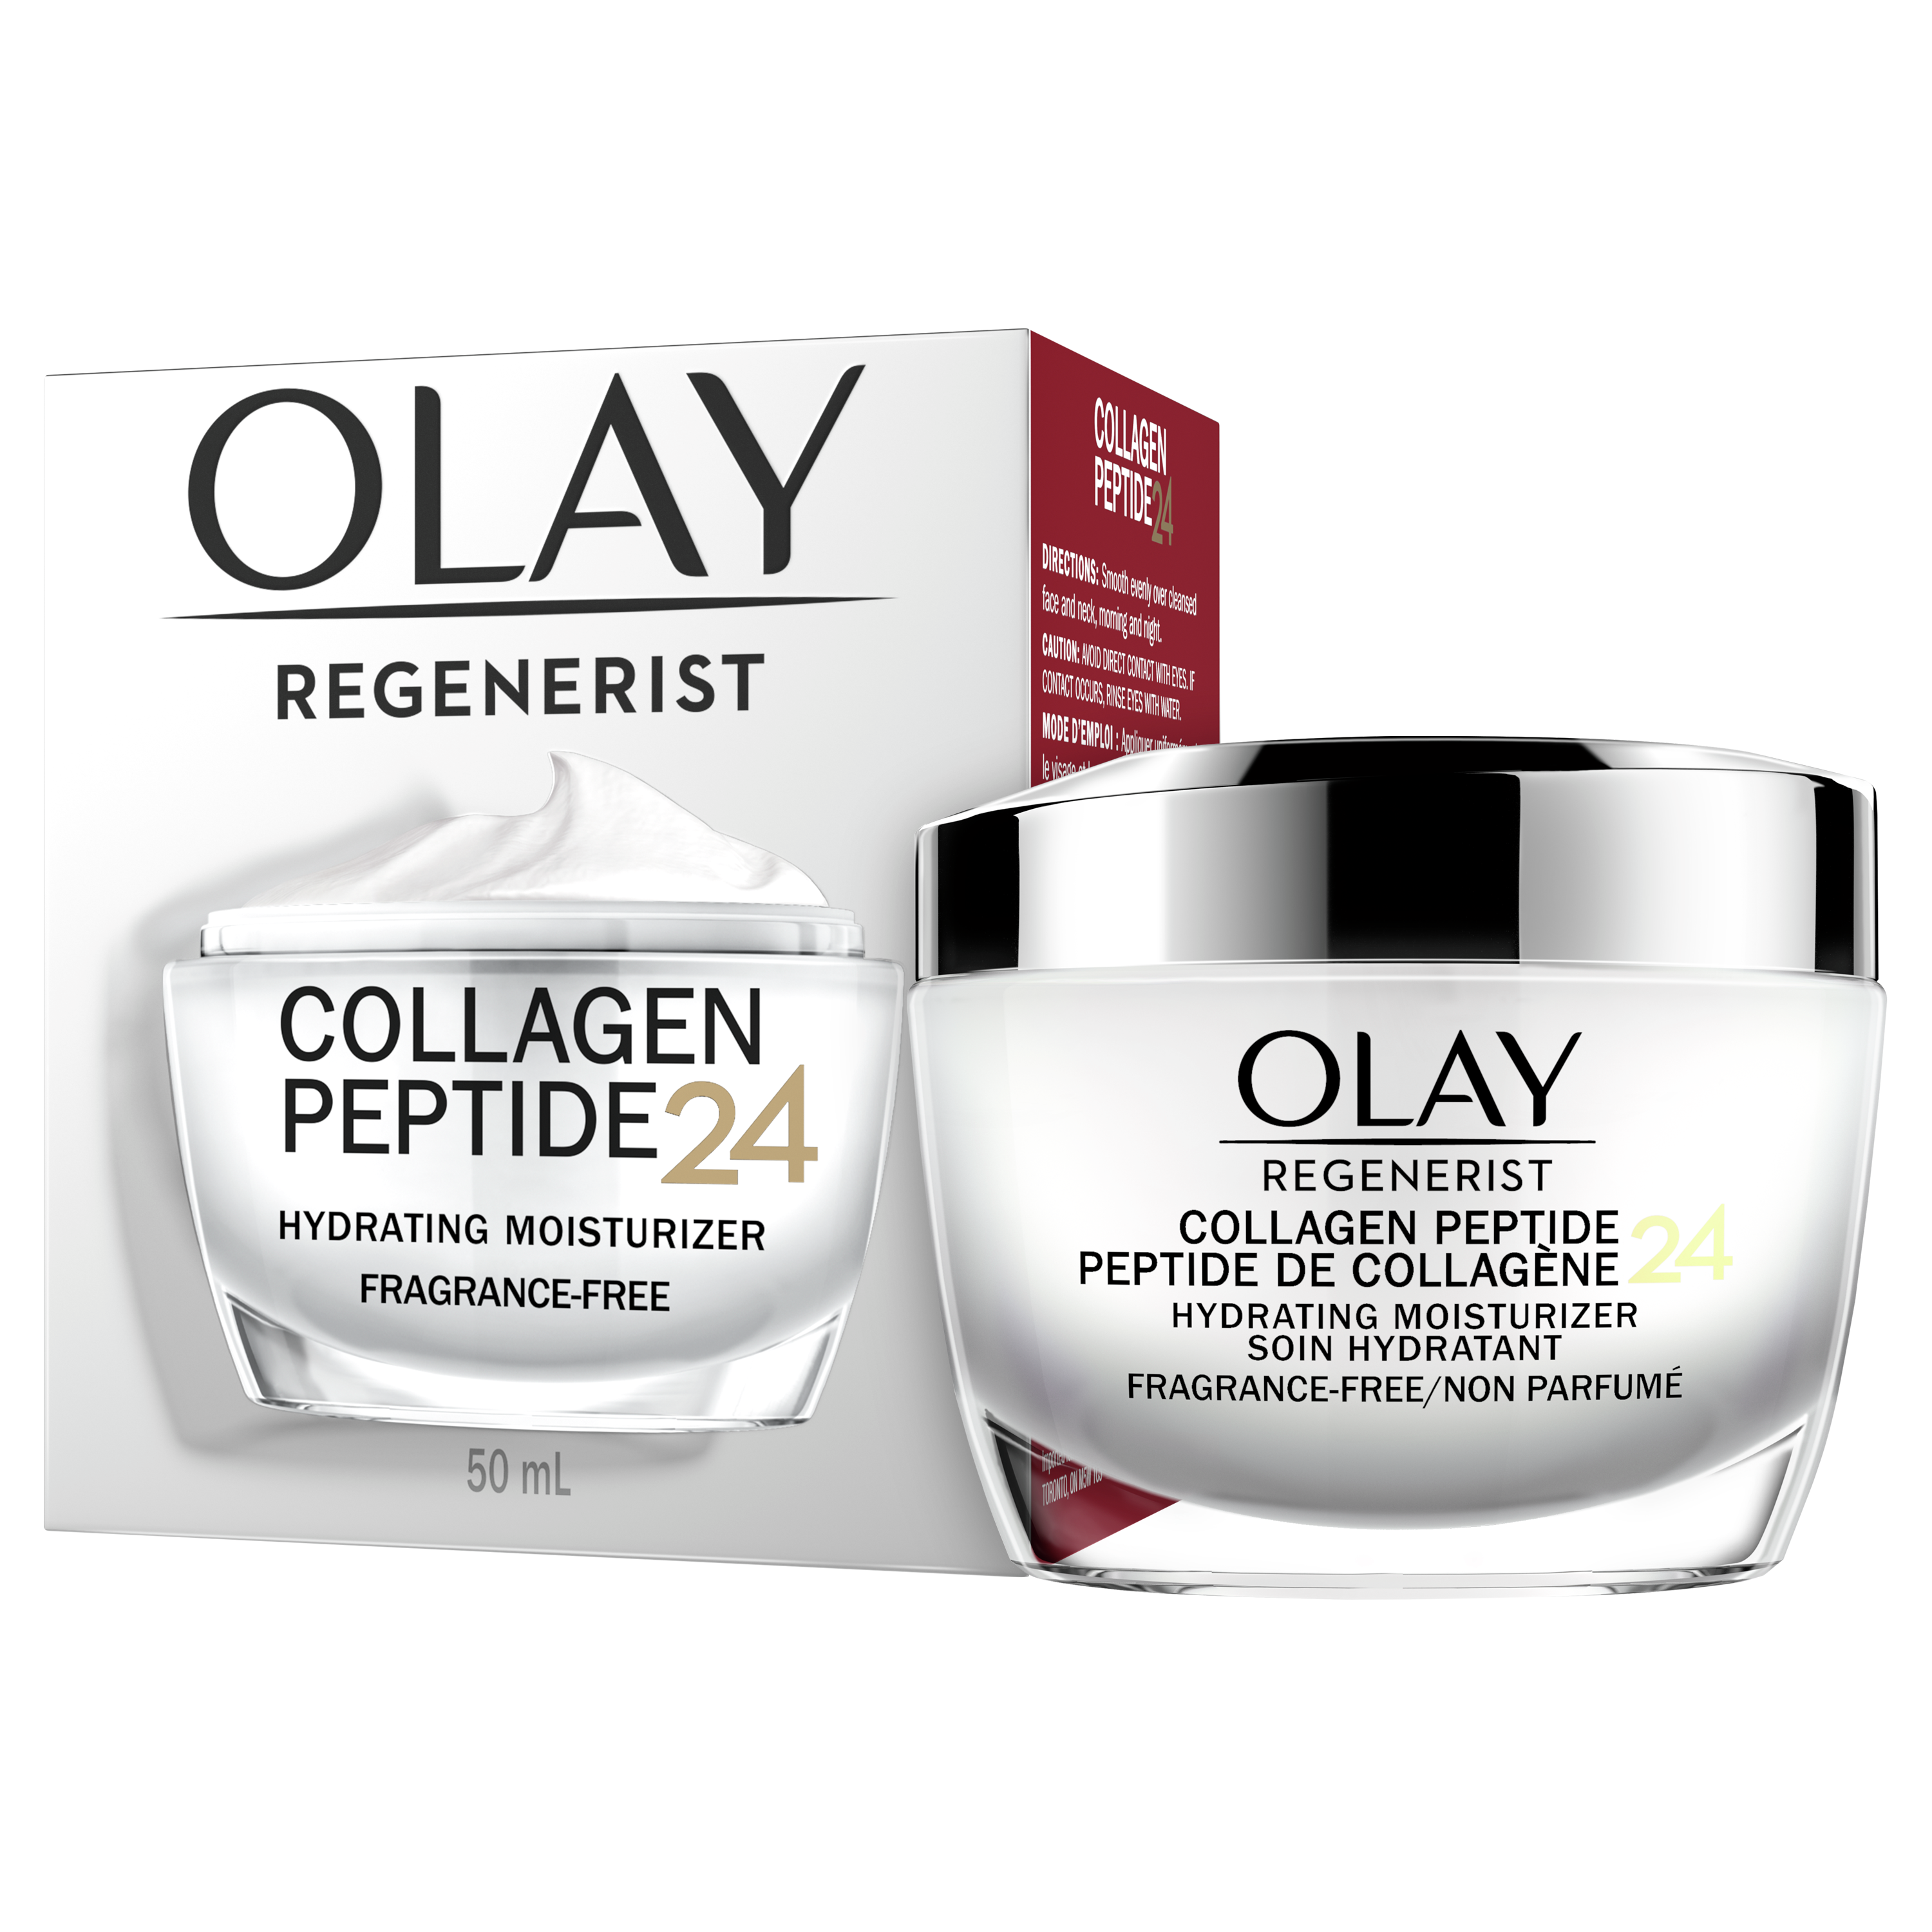 Hydratant pour le visage Olay Regenerist avec peptide de collagène 24, non parfumée, 50 mL